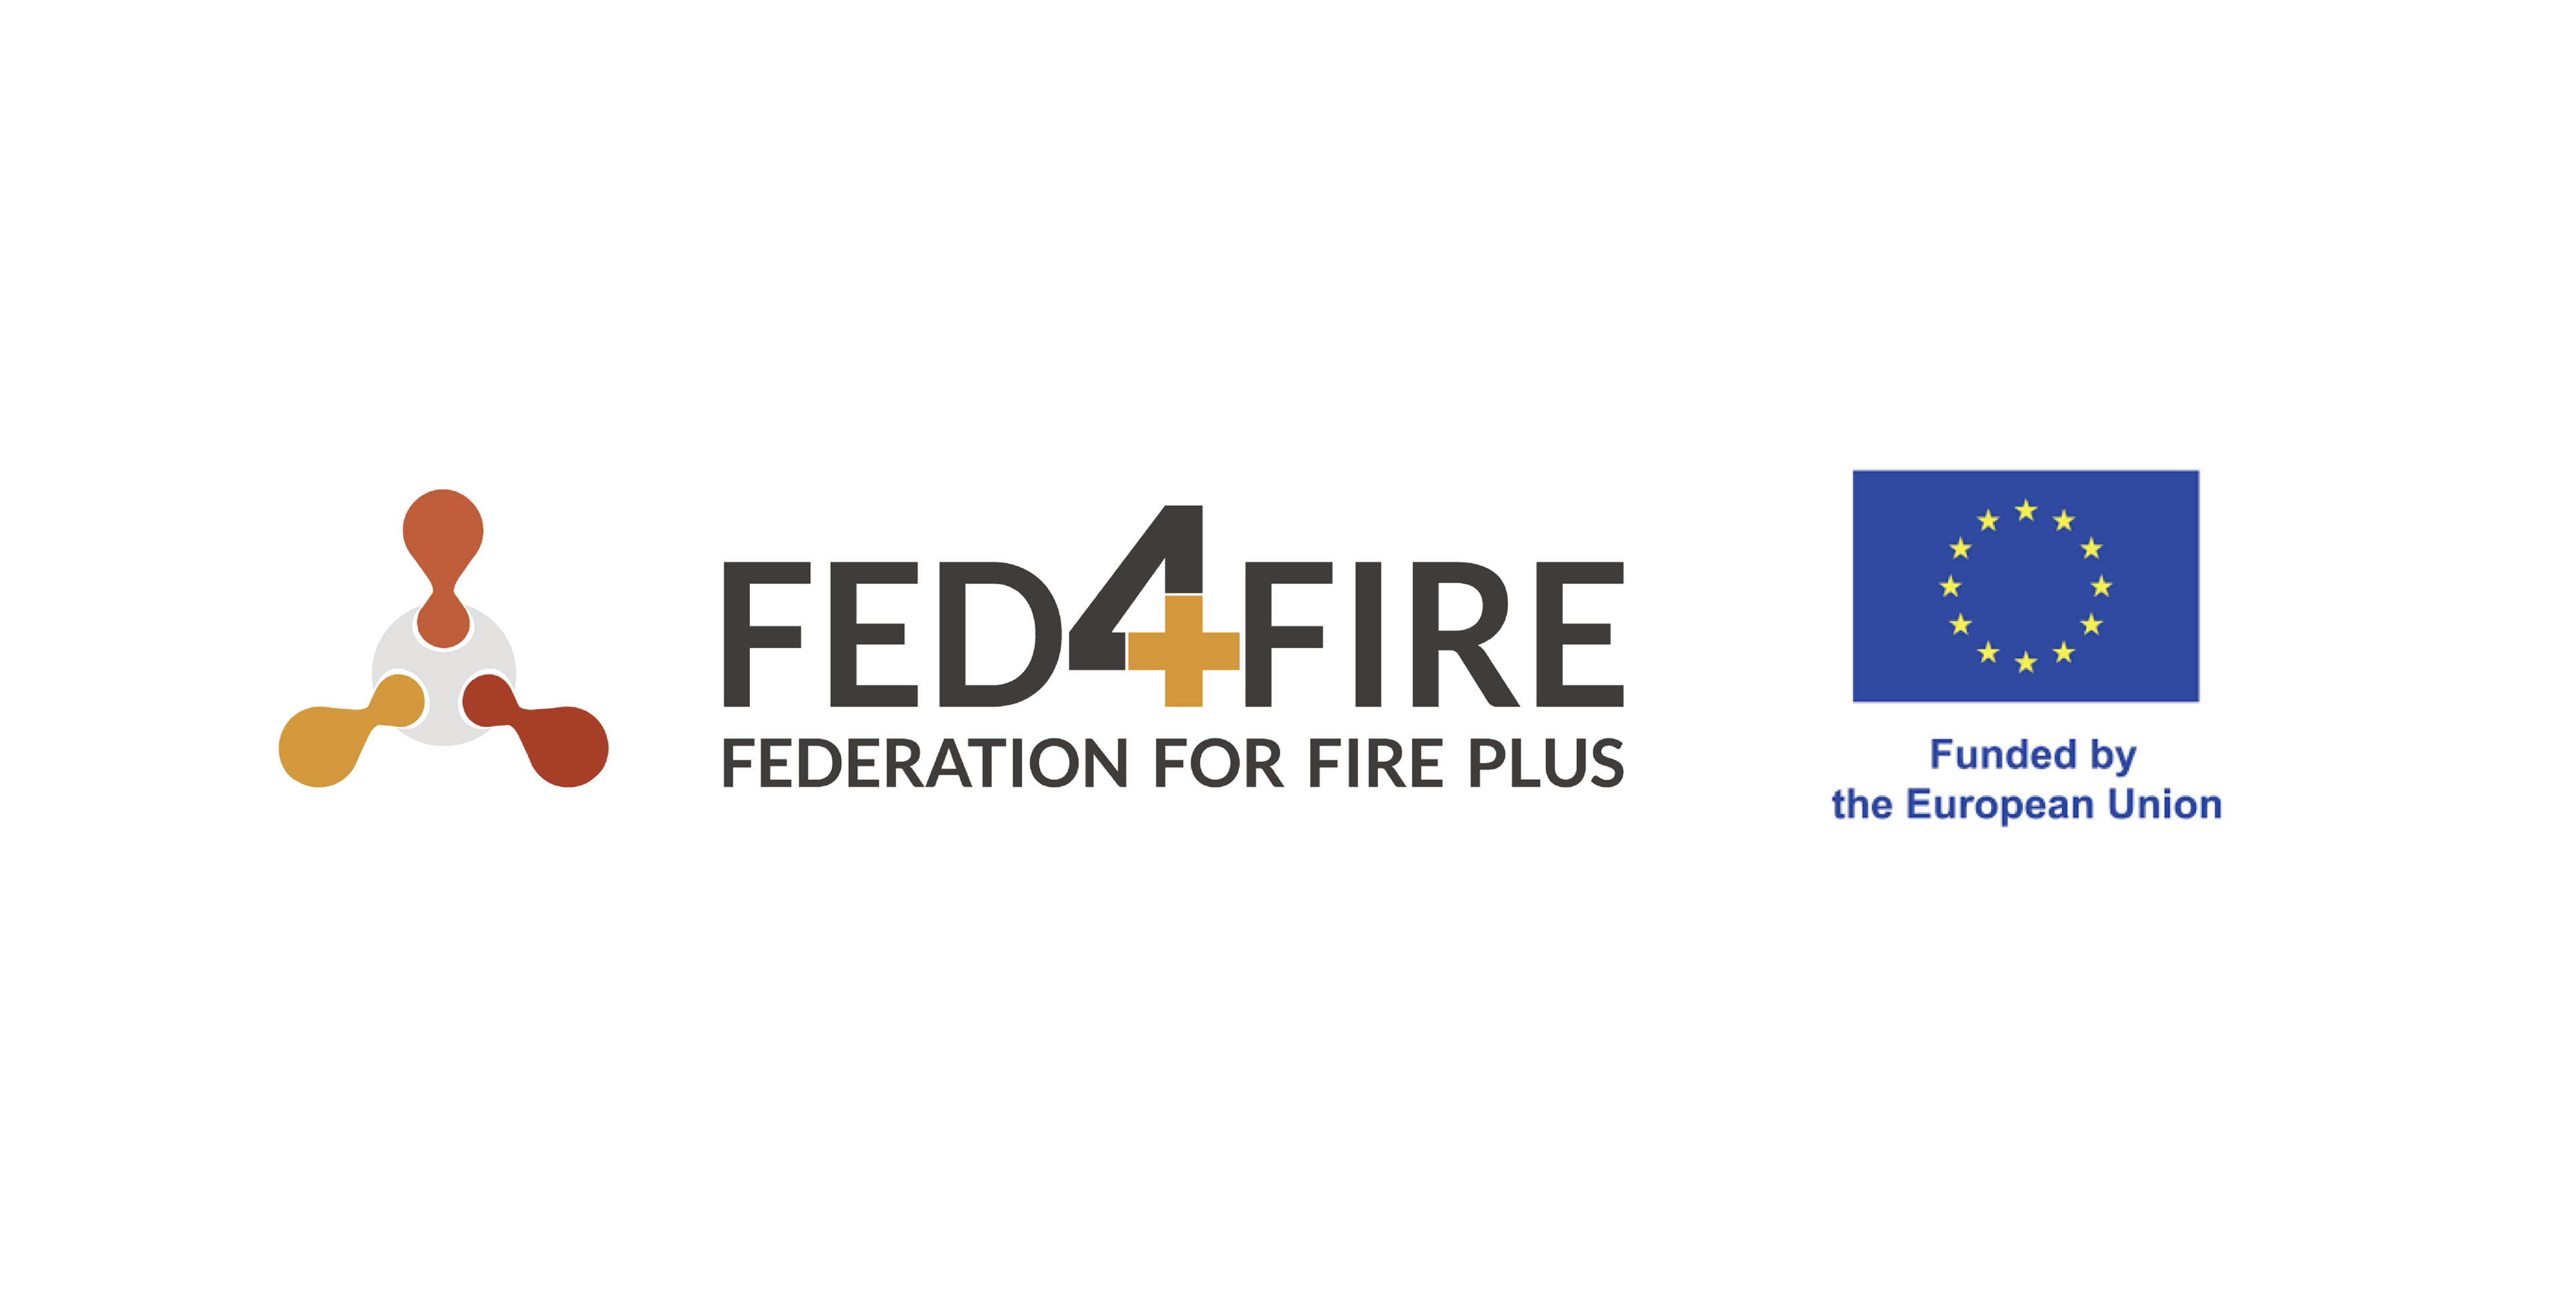 Fed4fire